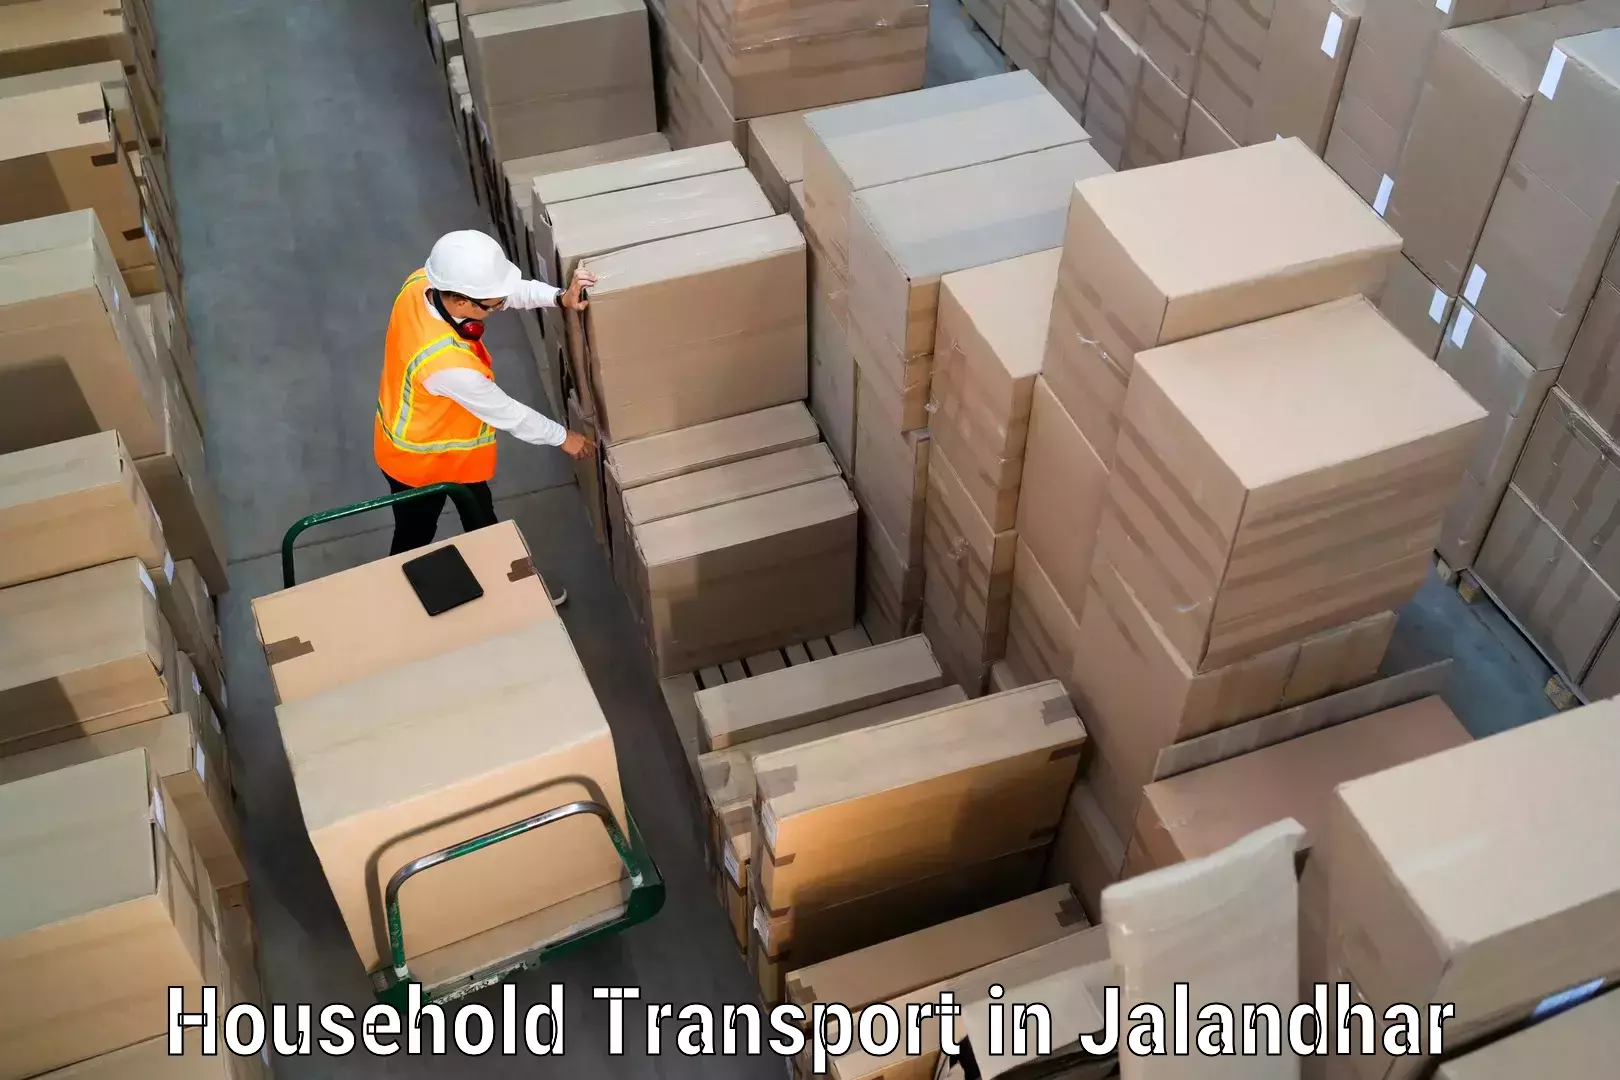 Furniture moving service in Jalandhar